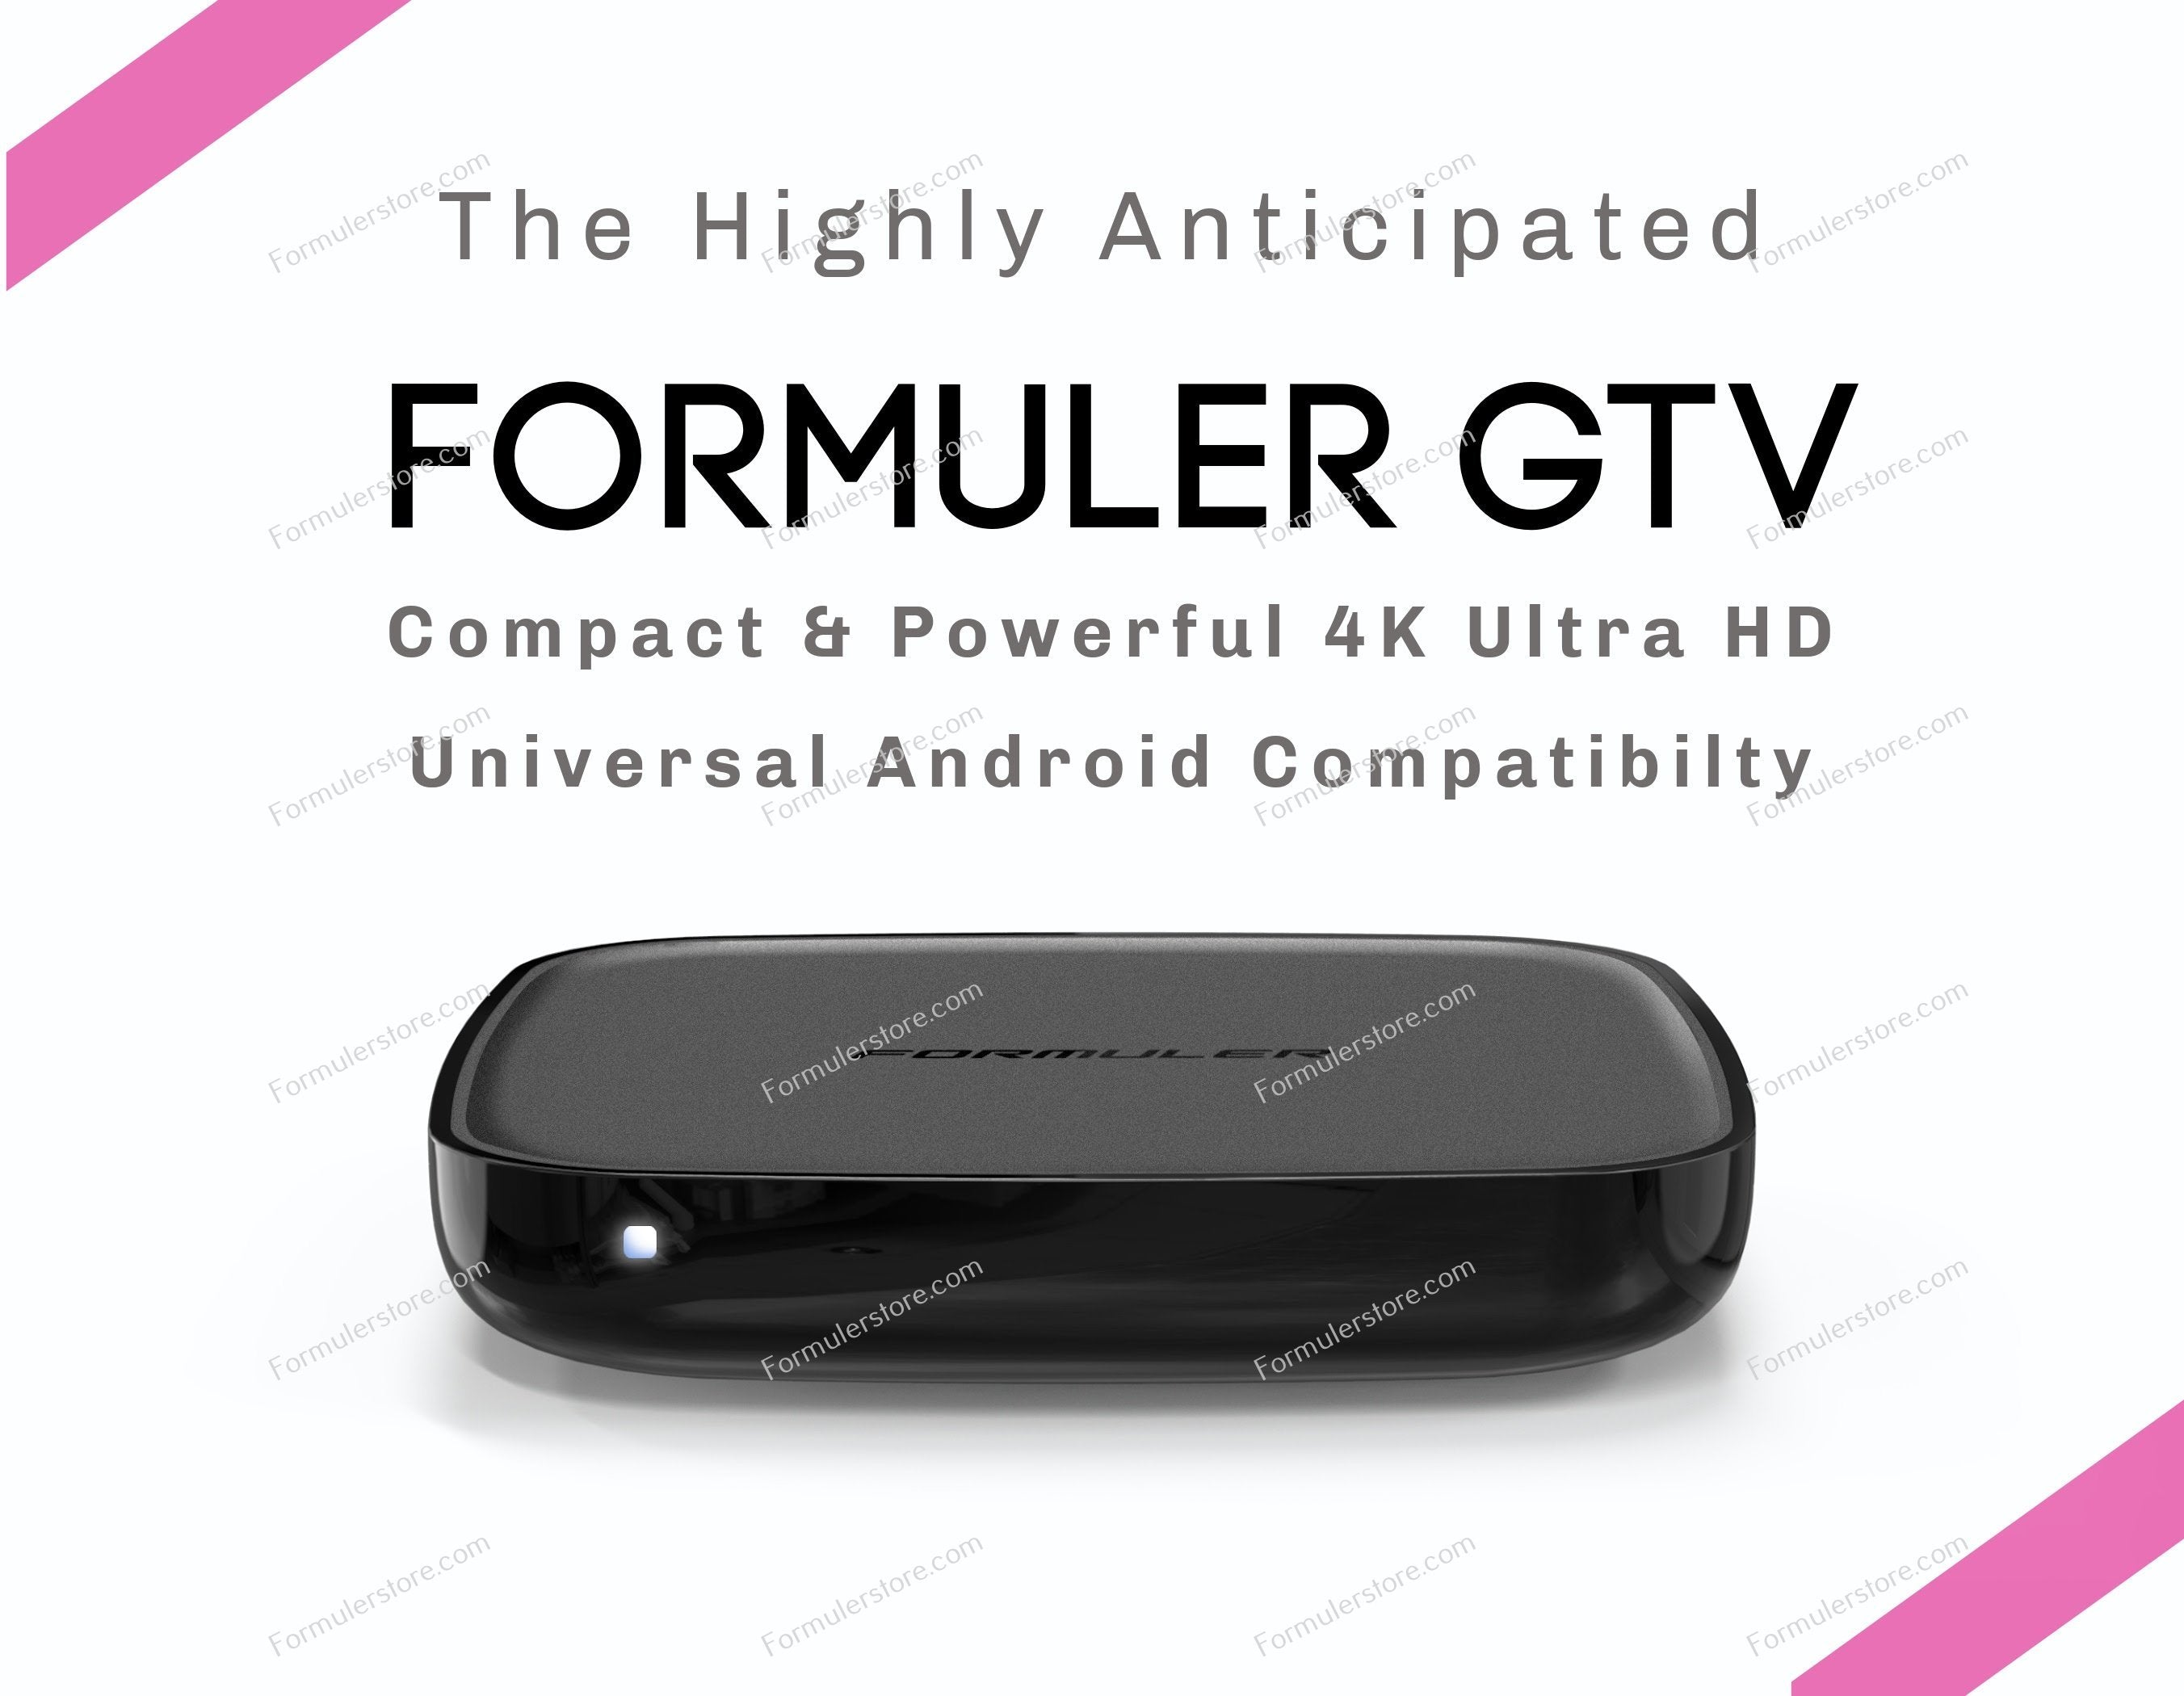 Compra Formuler GTV IPTV Android 4k - MYTV ONLINE 2 con precios increibles.